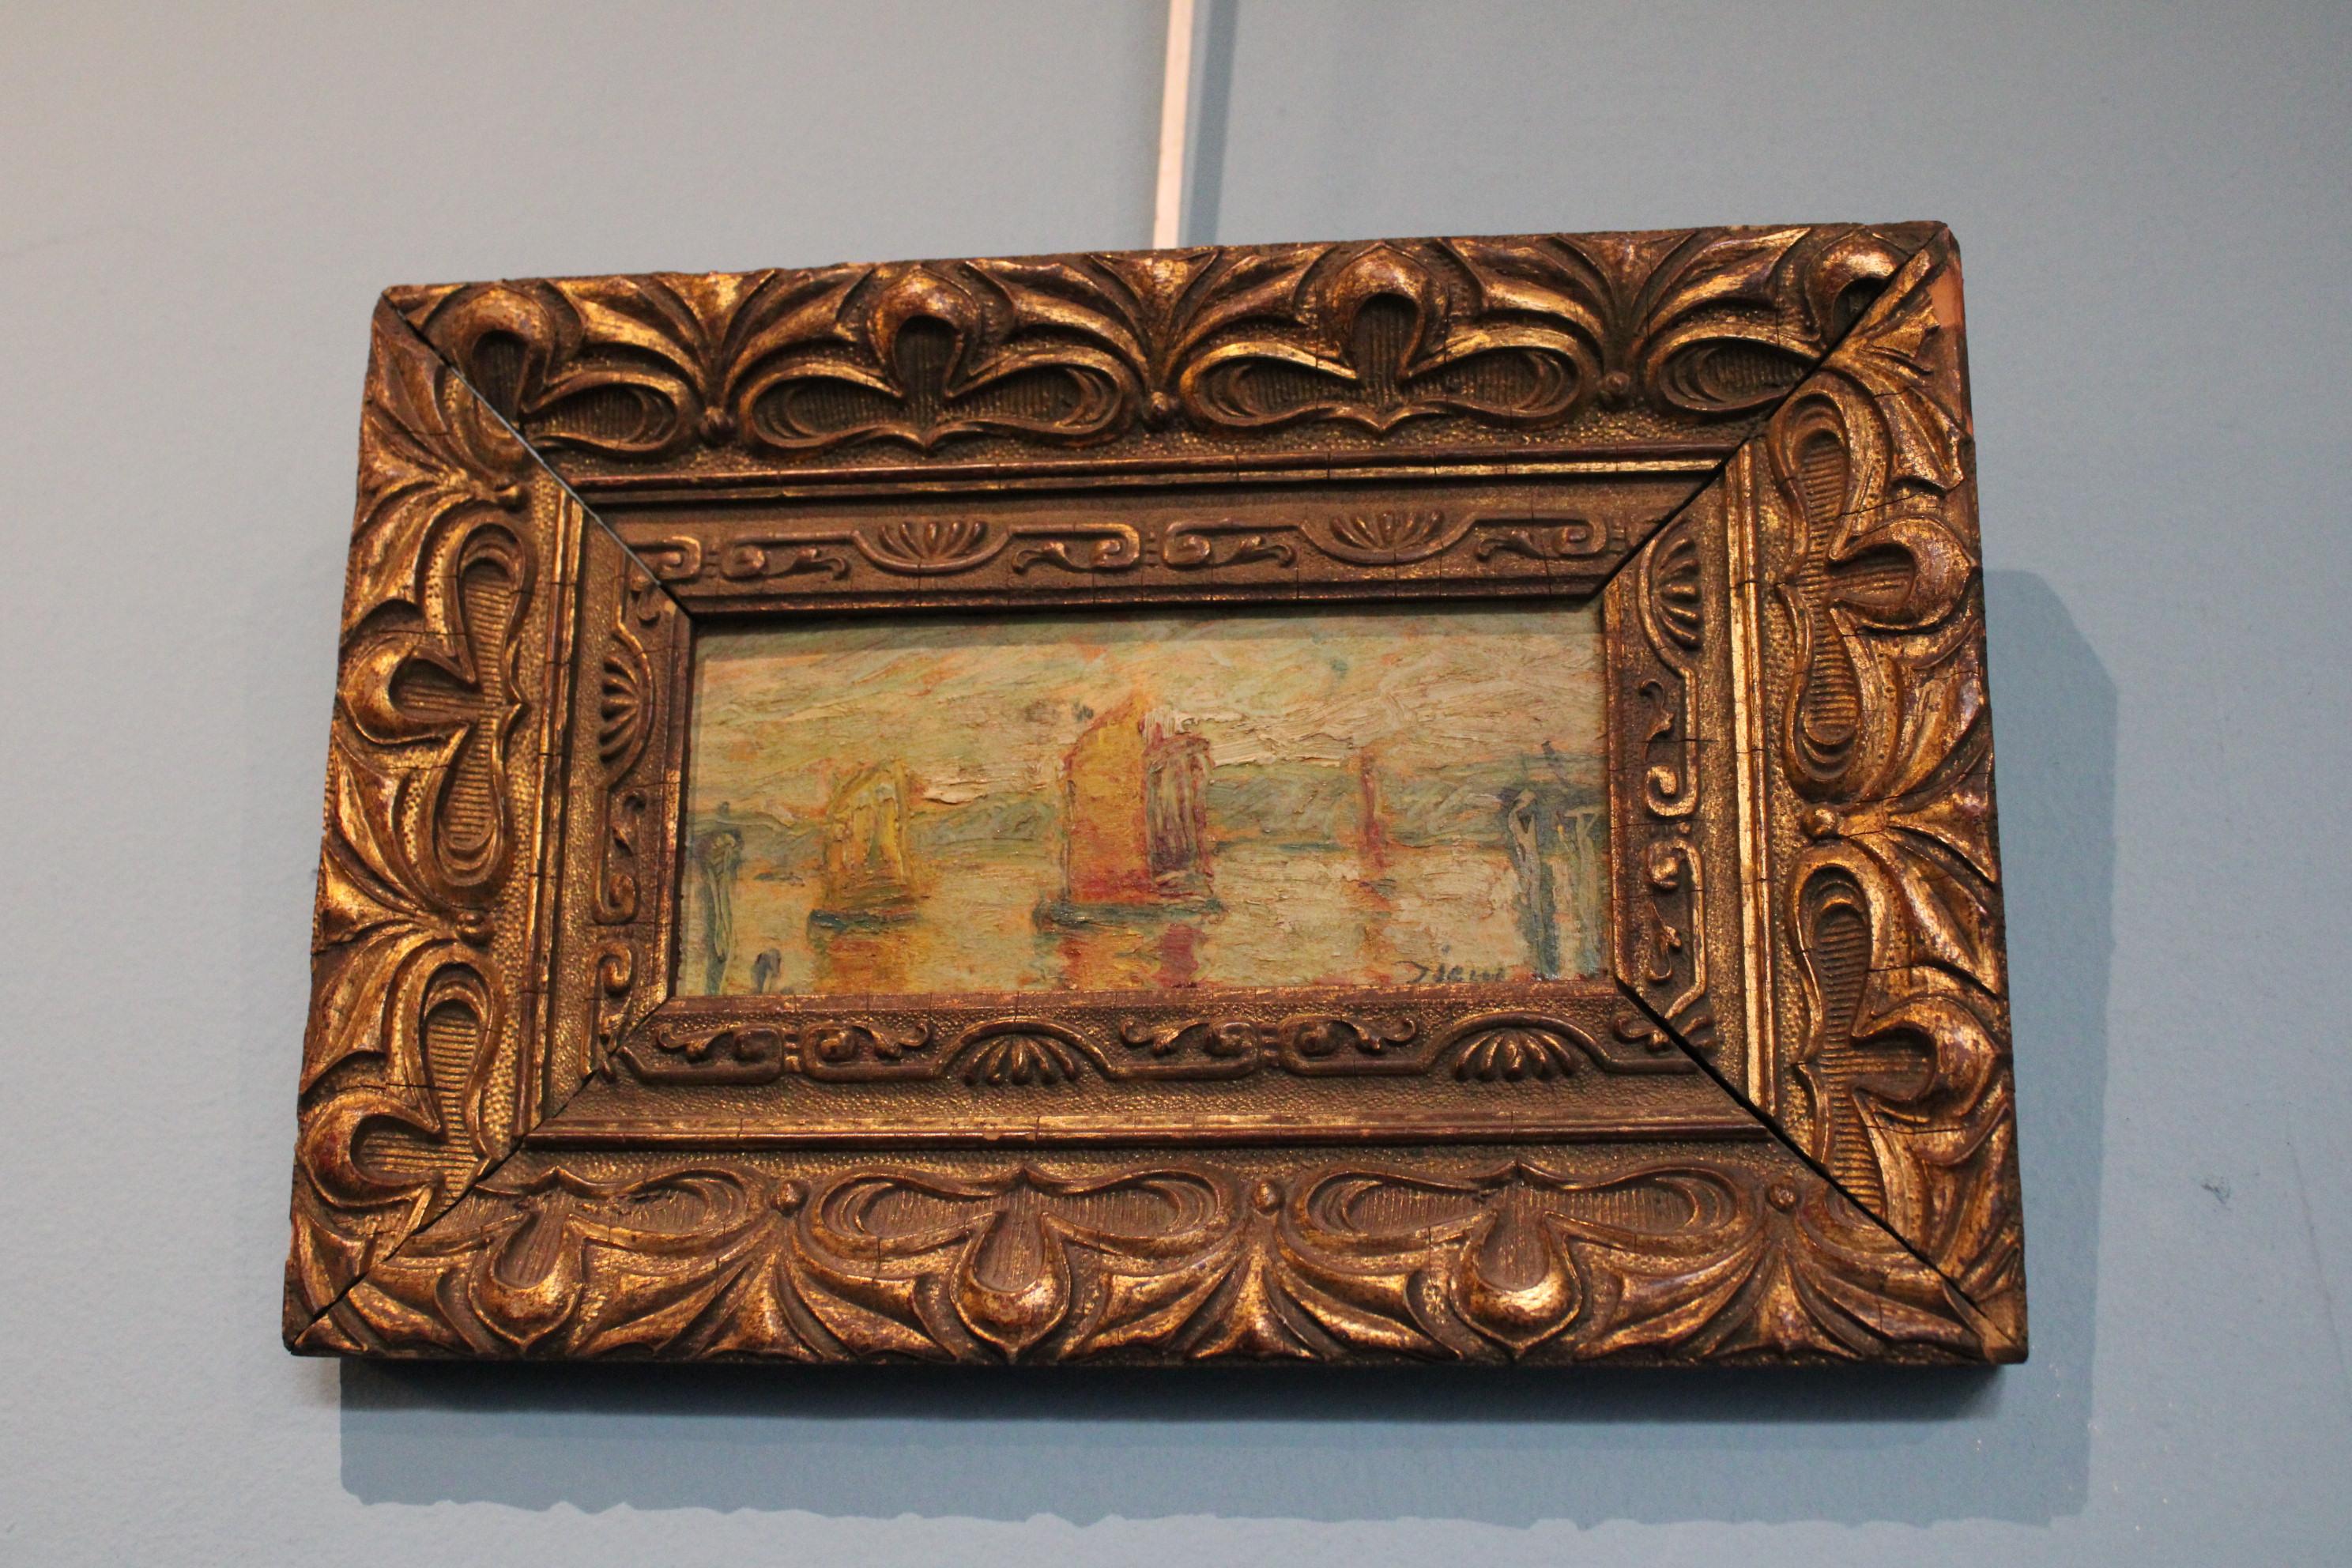 Peinture dans le style de  le peintre français Flix Ziem (1821-1911).
Peintre de marine et de genre. 

Dimensions 
Avec cadre : 25 x 17 x 2,5 cm
Sans cadre : 15,5 x 7,5 x 0,2 cm.